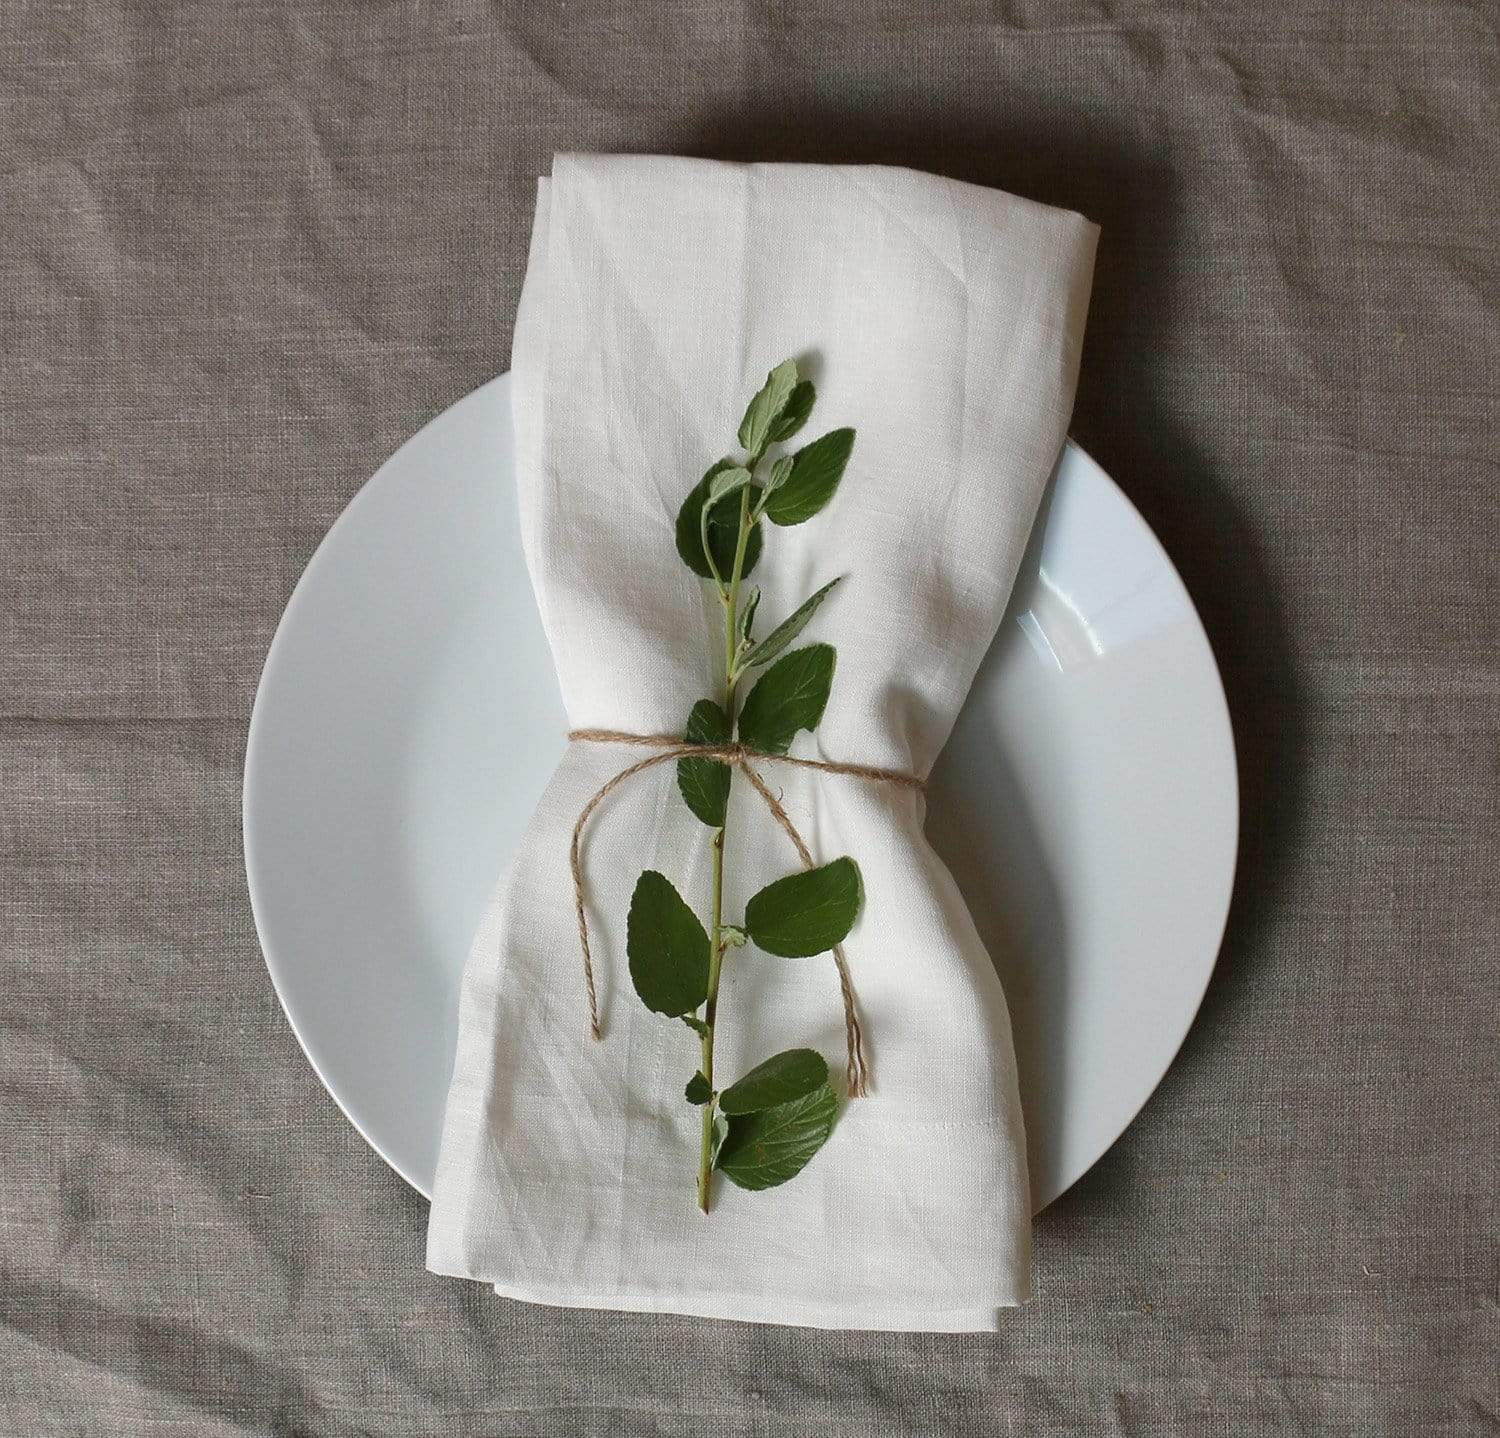 Smooth Linen Napkin Set (Choose 4 or 6) - Rough Linen